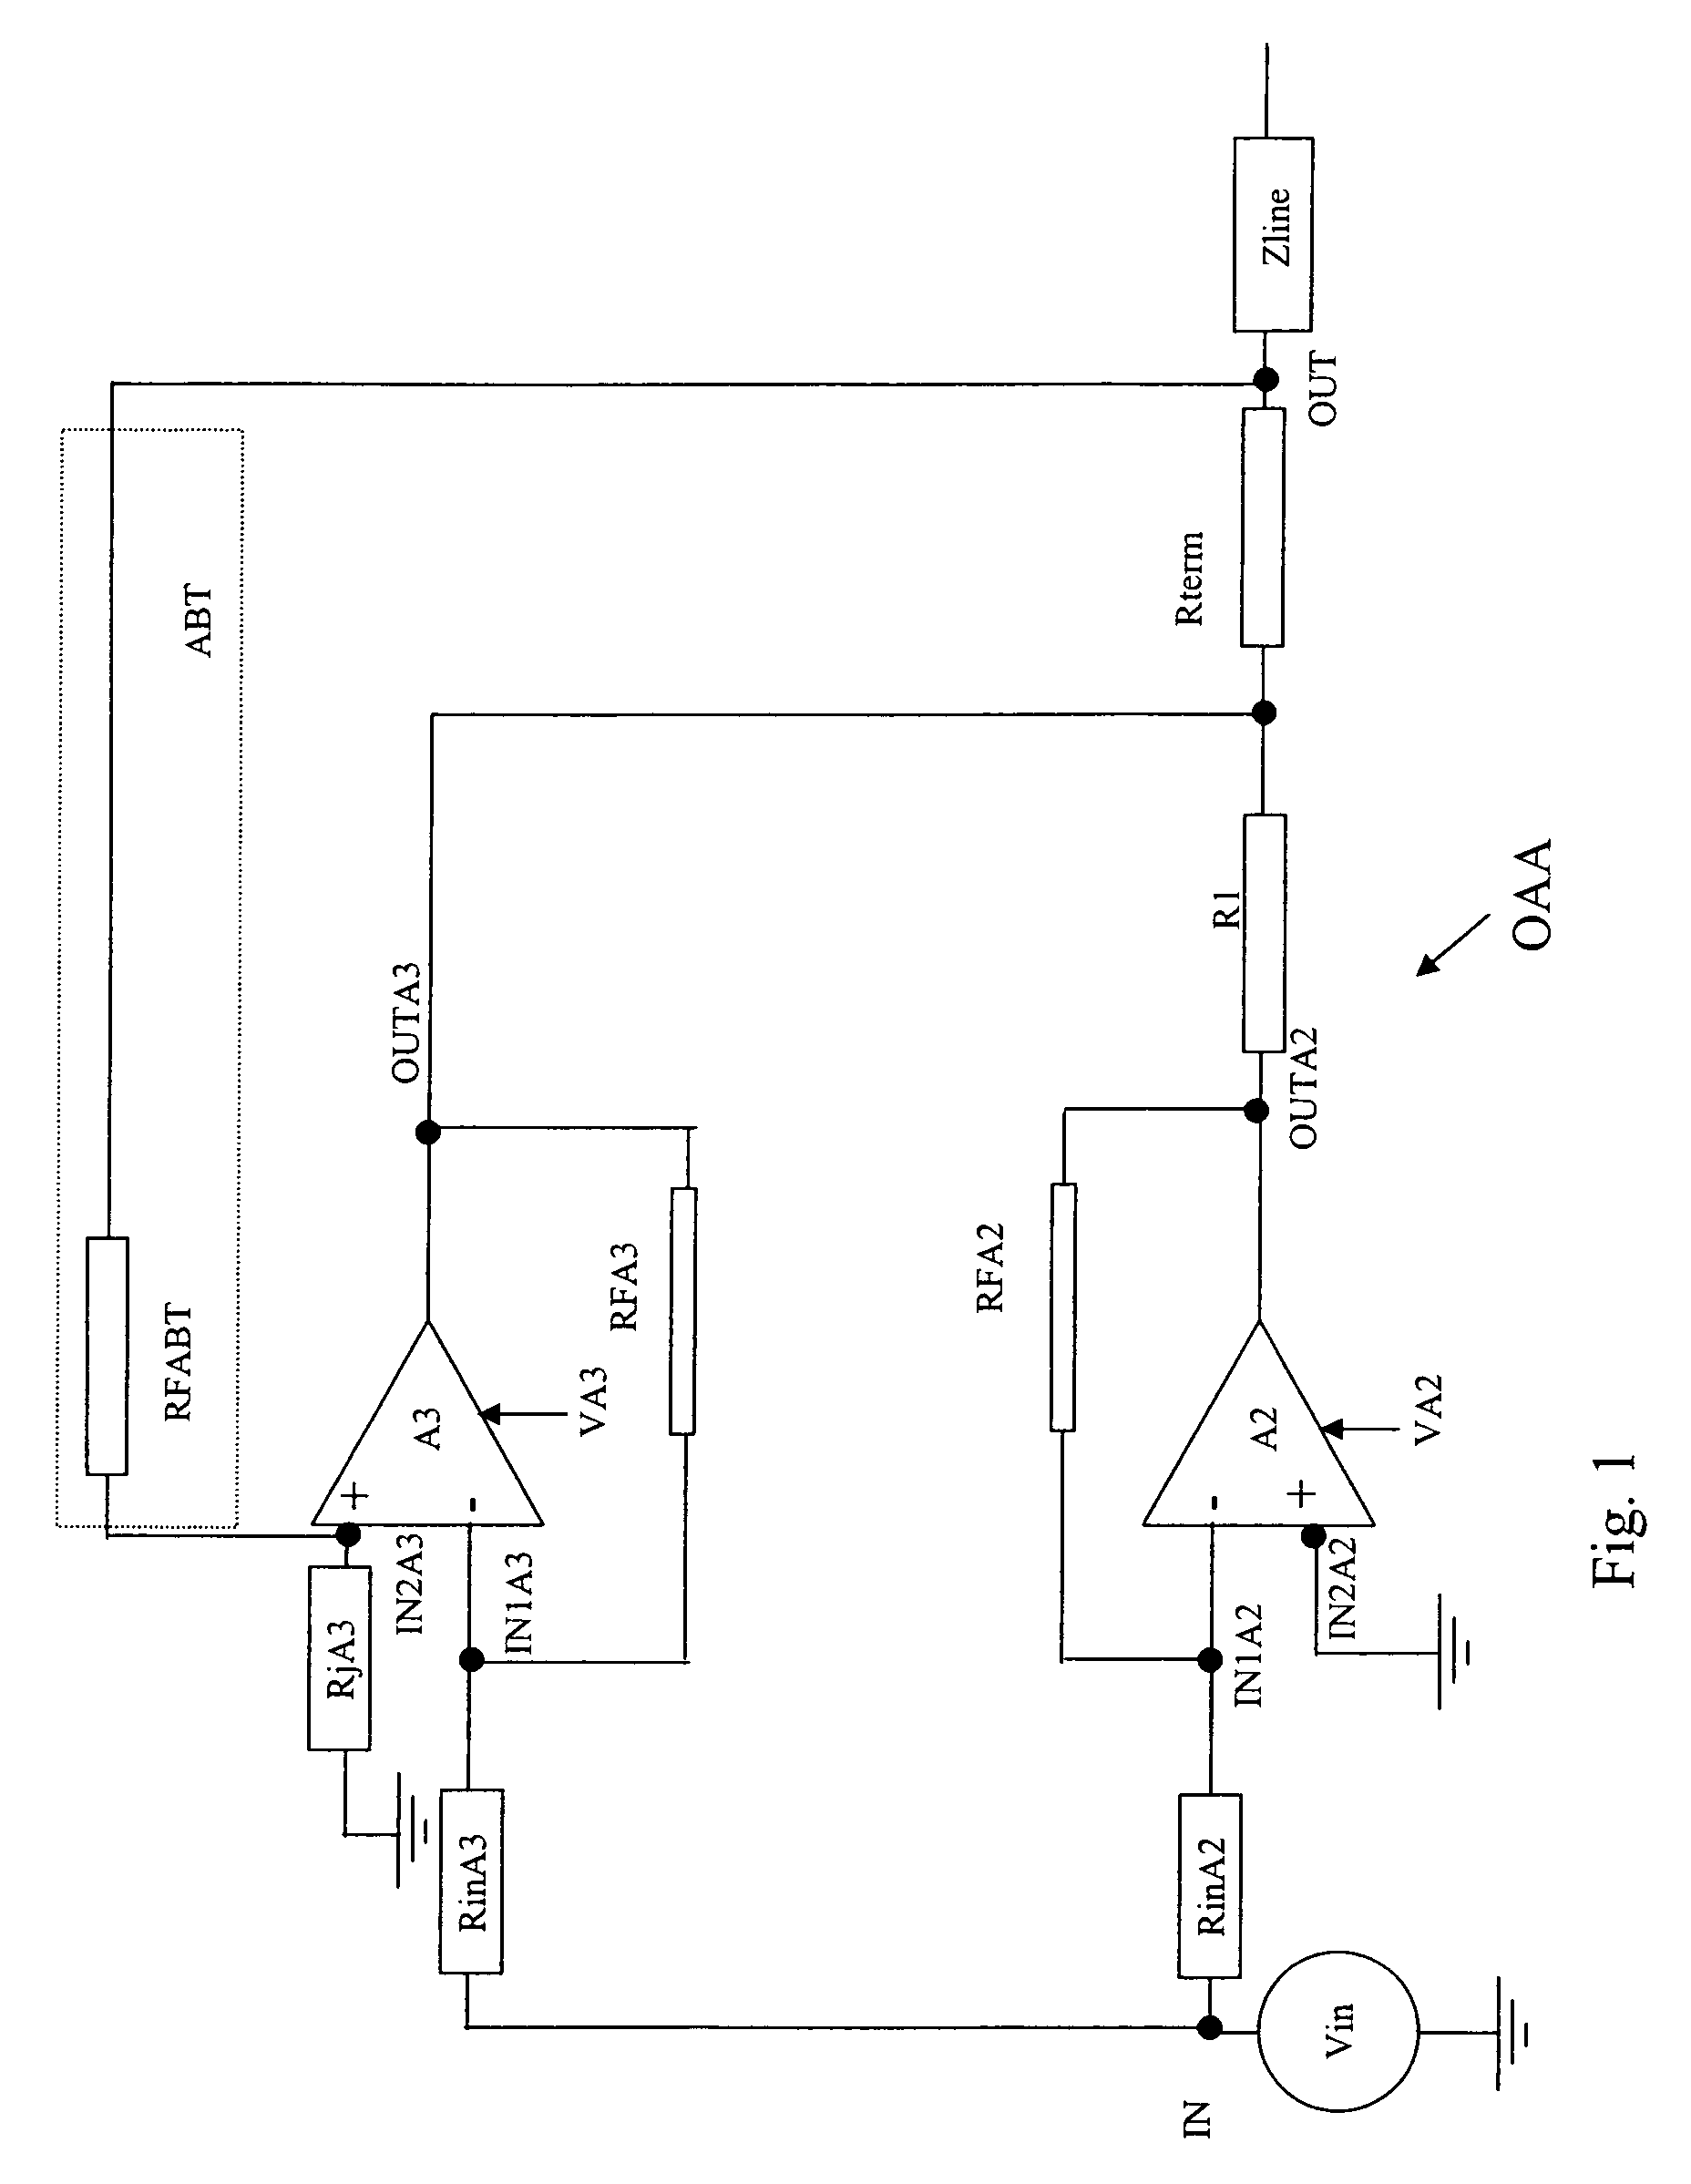 Operational amplifier arrangement